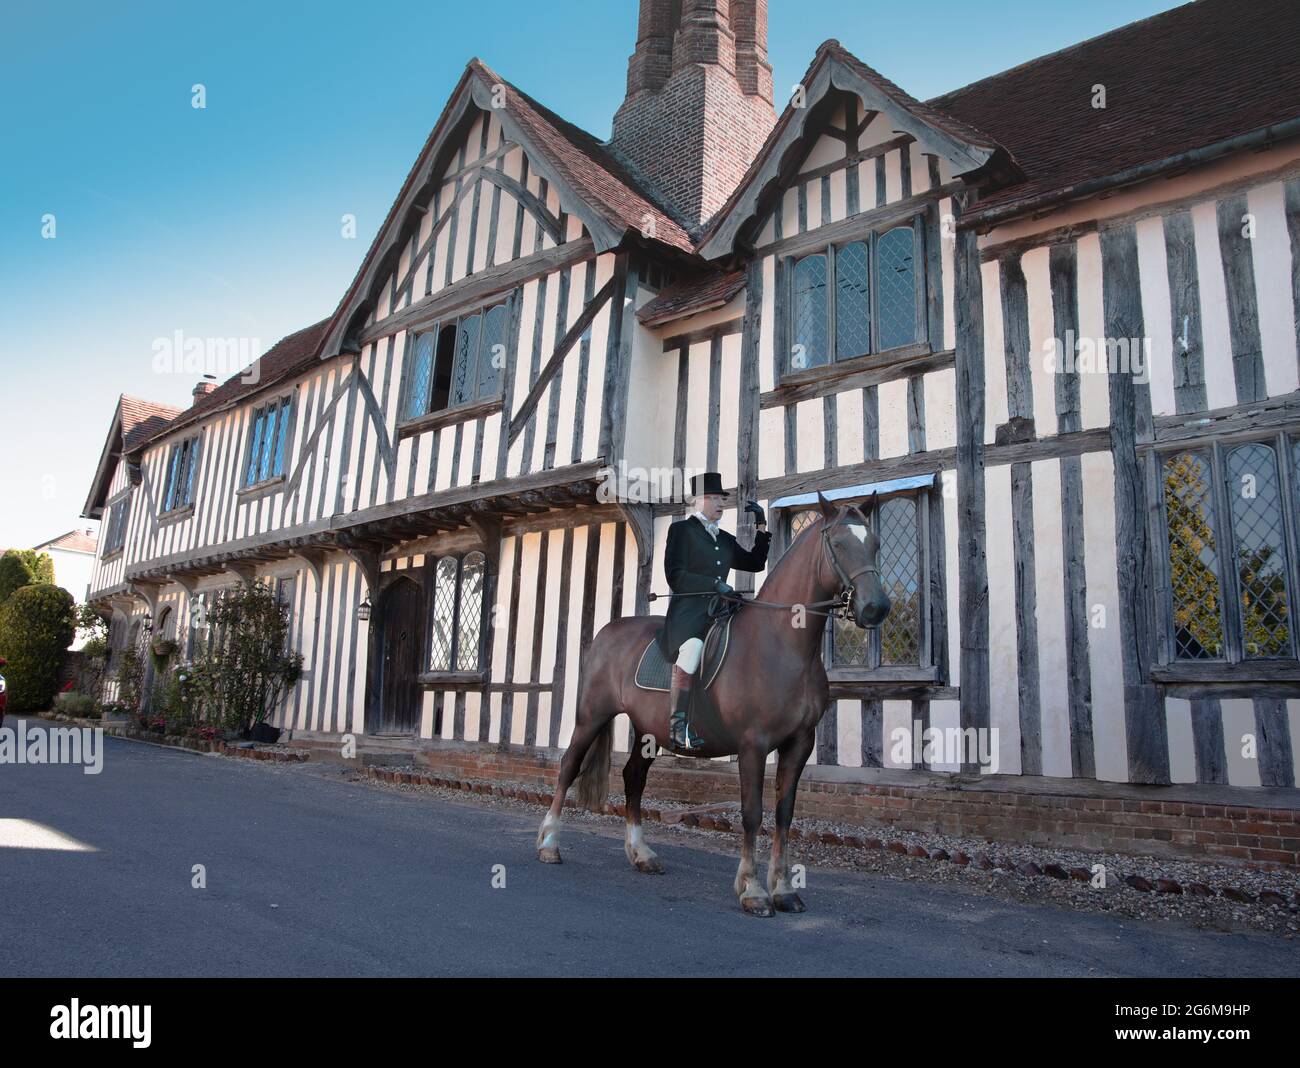 Lady formale di equitazione abitudine cavalcare un cavallo cacciatore di baia in un grazioso villaggio Suffolk di Nayland in Inghilterra con un vecchio edificio in legno sullo sfondo Foto Stock